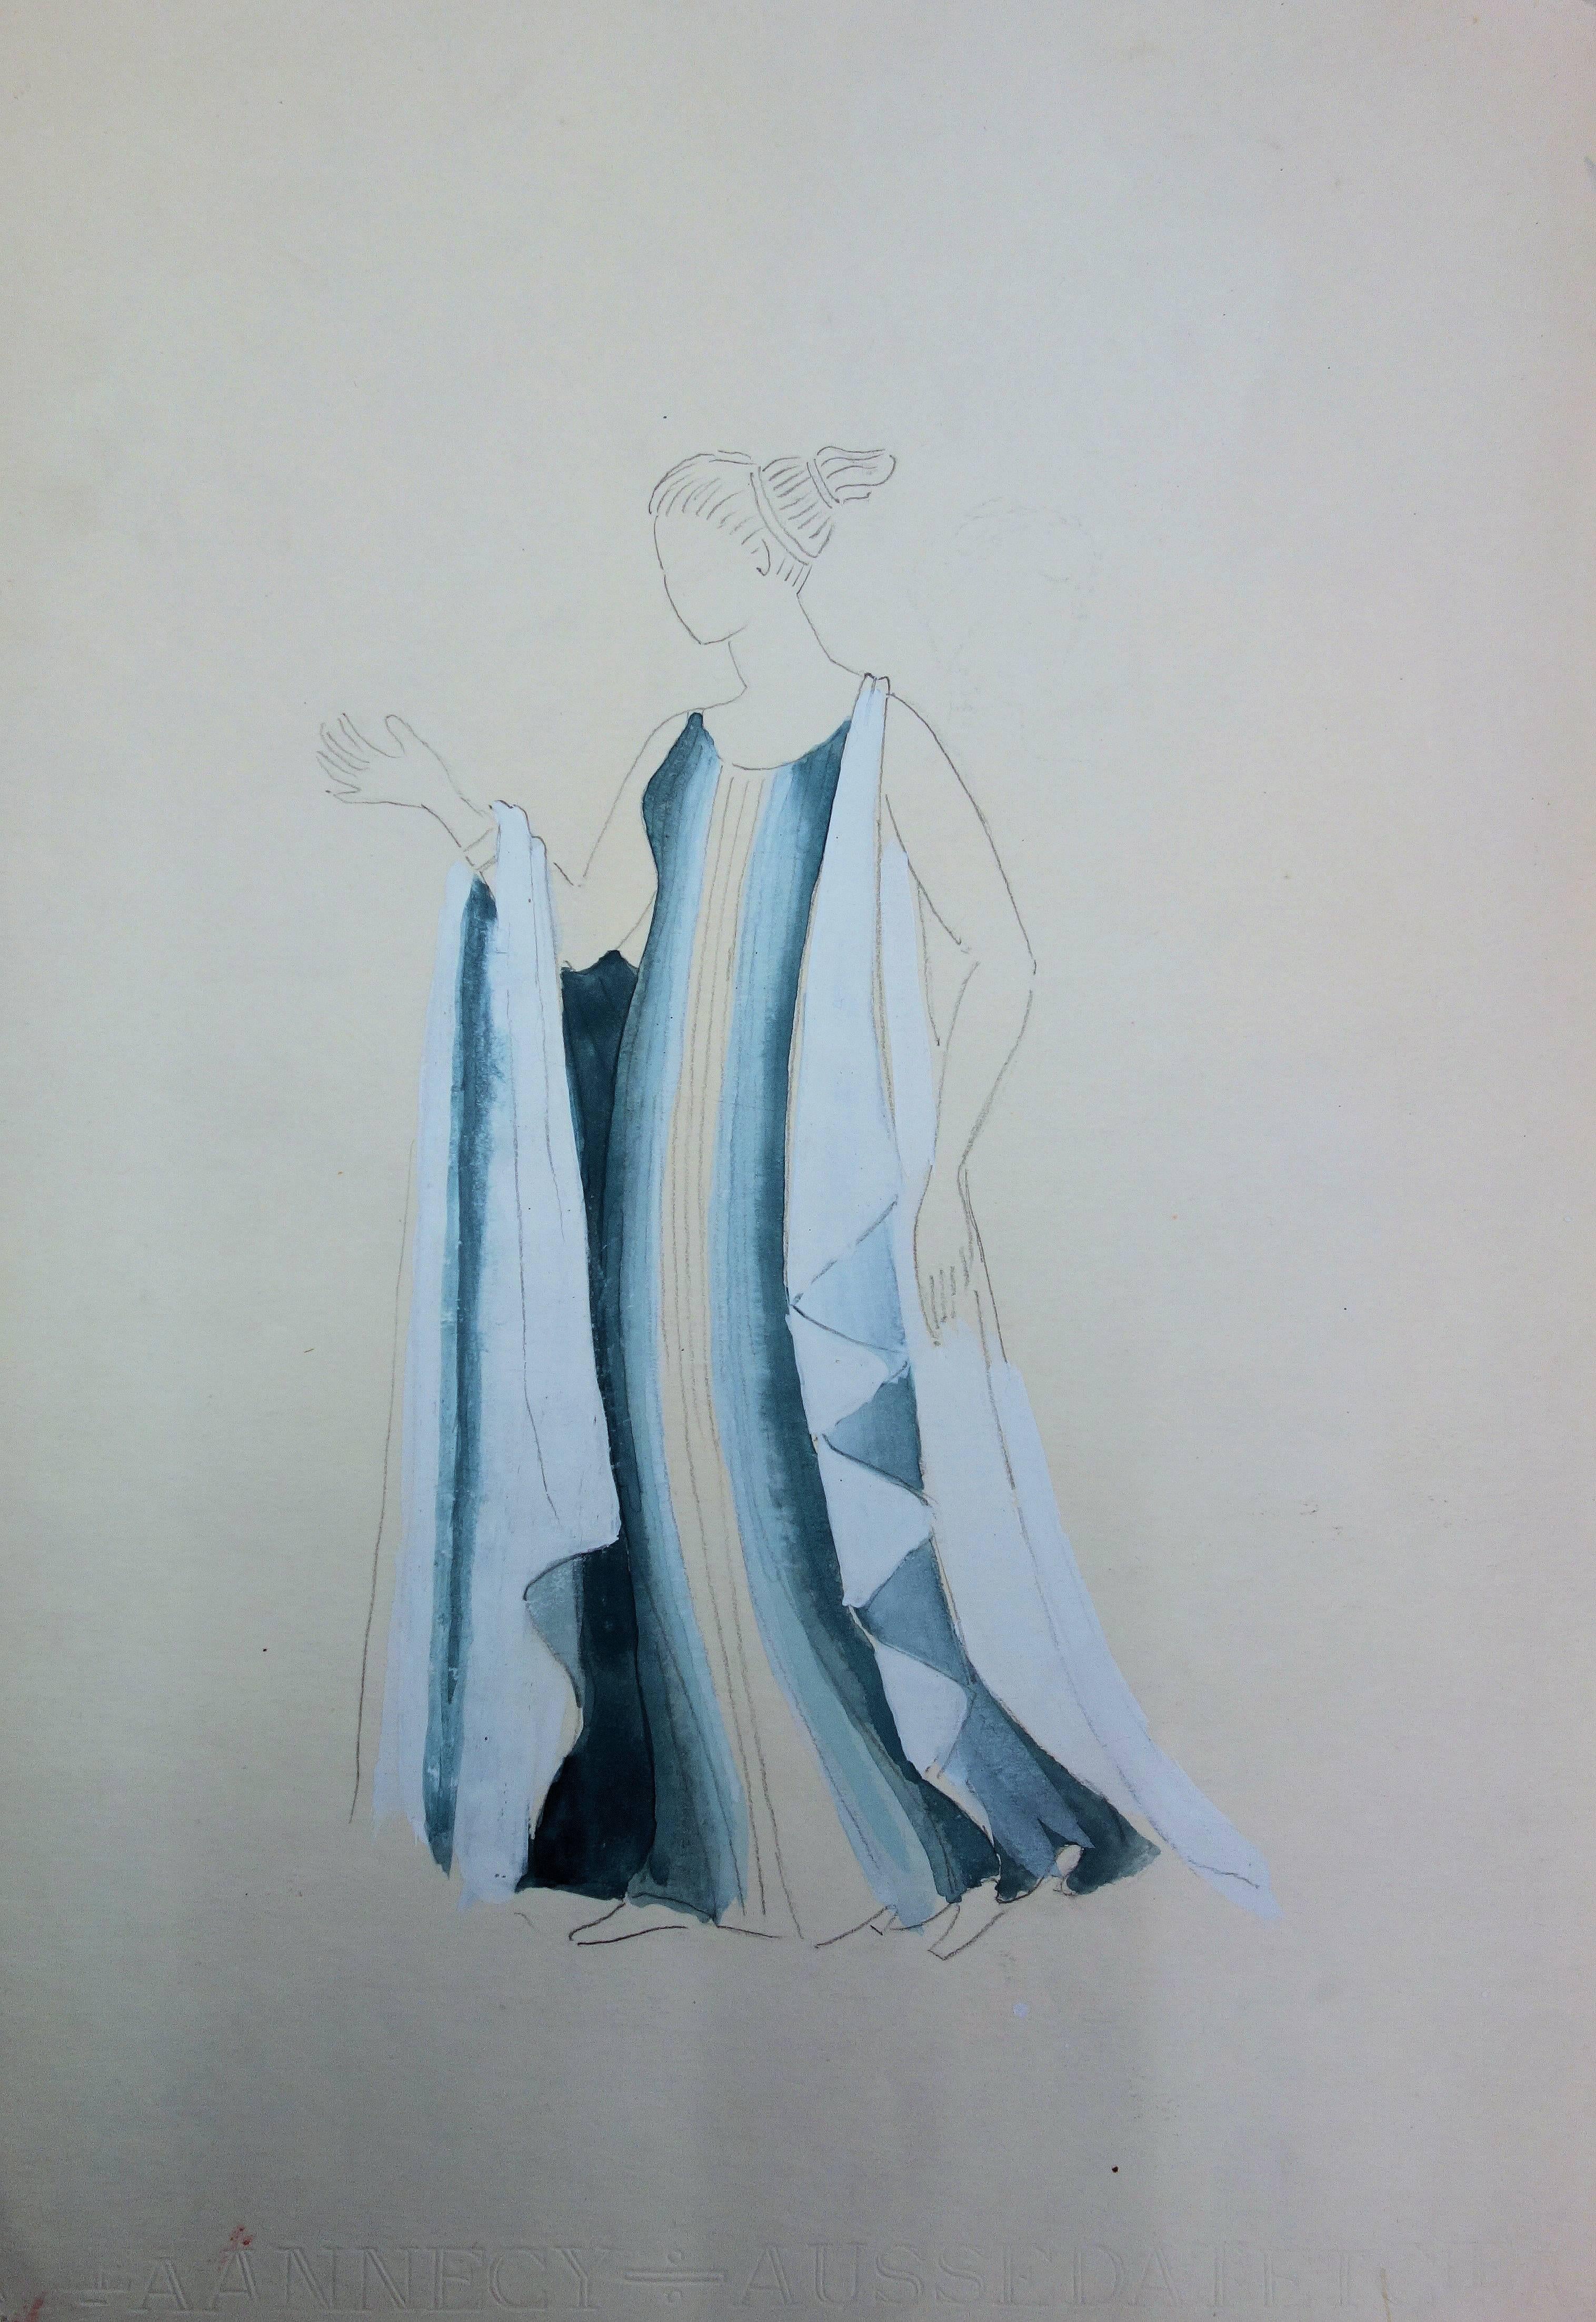 Langes blaues Kleid: Antikes griechisches Kostüm (Antigone) – Original Aquarellzeichnung